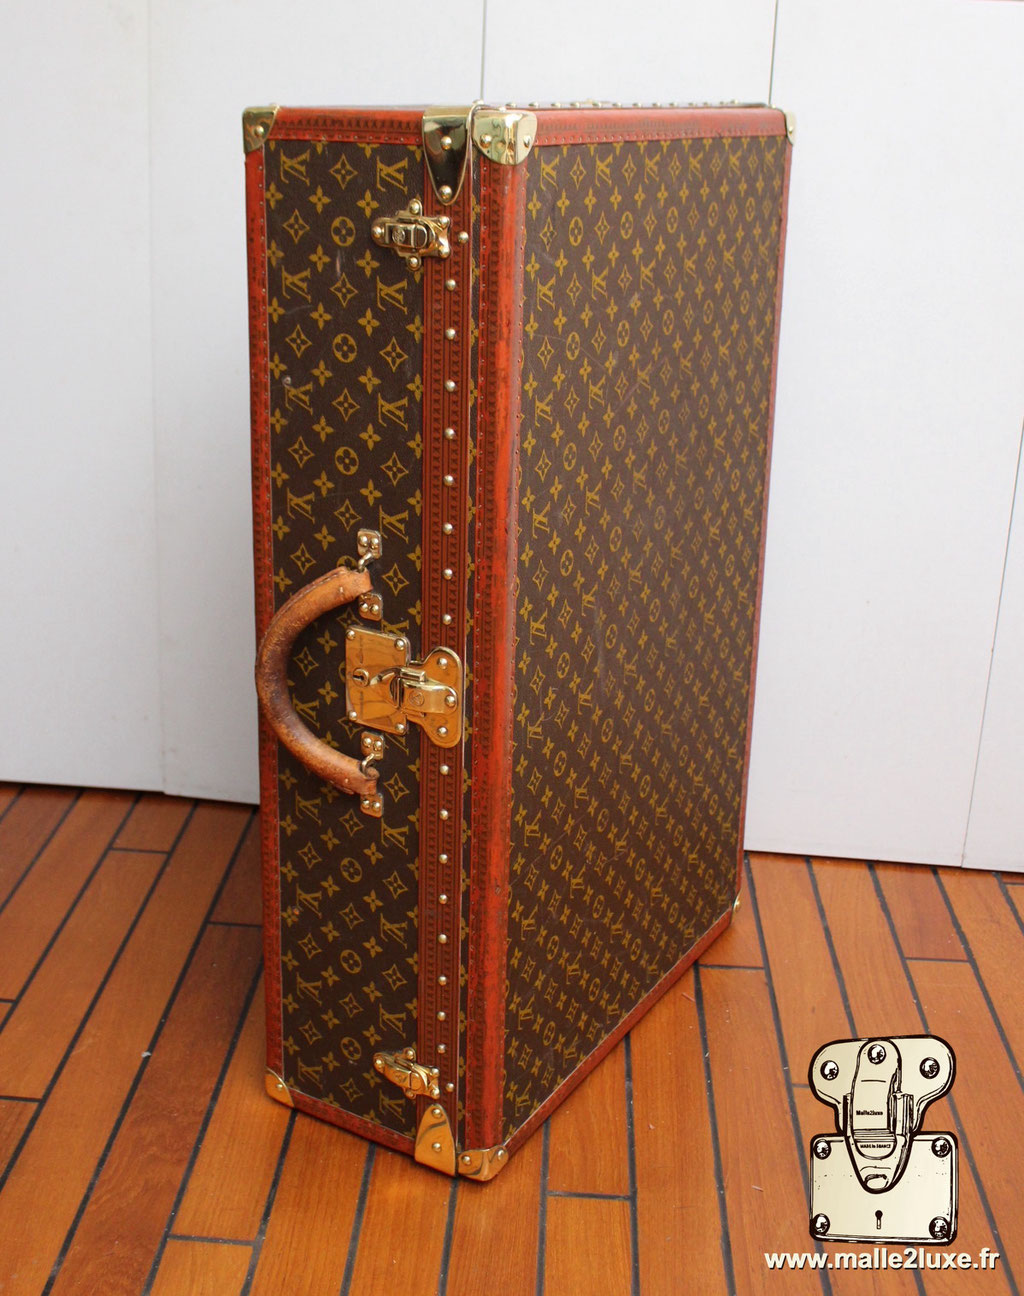 Alzer -M21224 Louis Vuitton valise suitcase trunk vintage